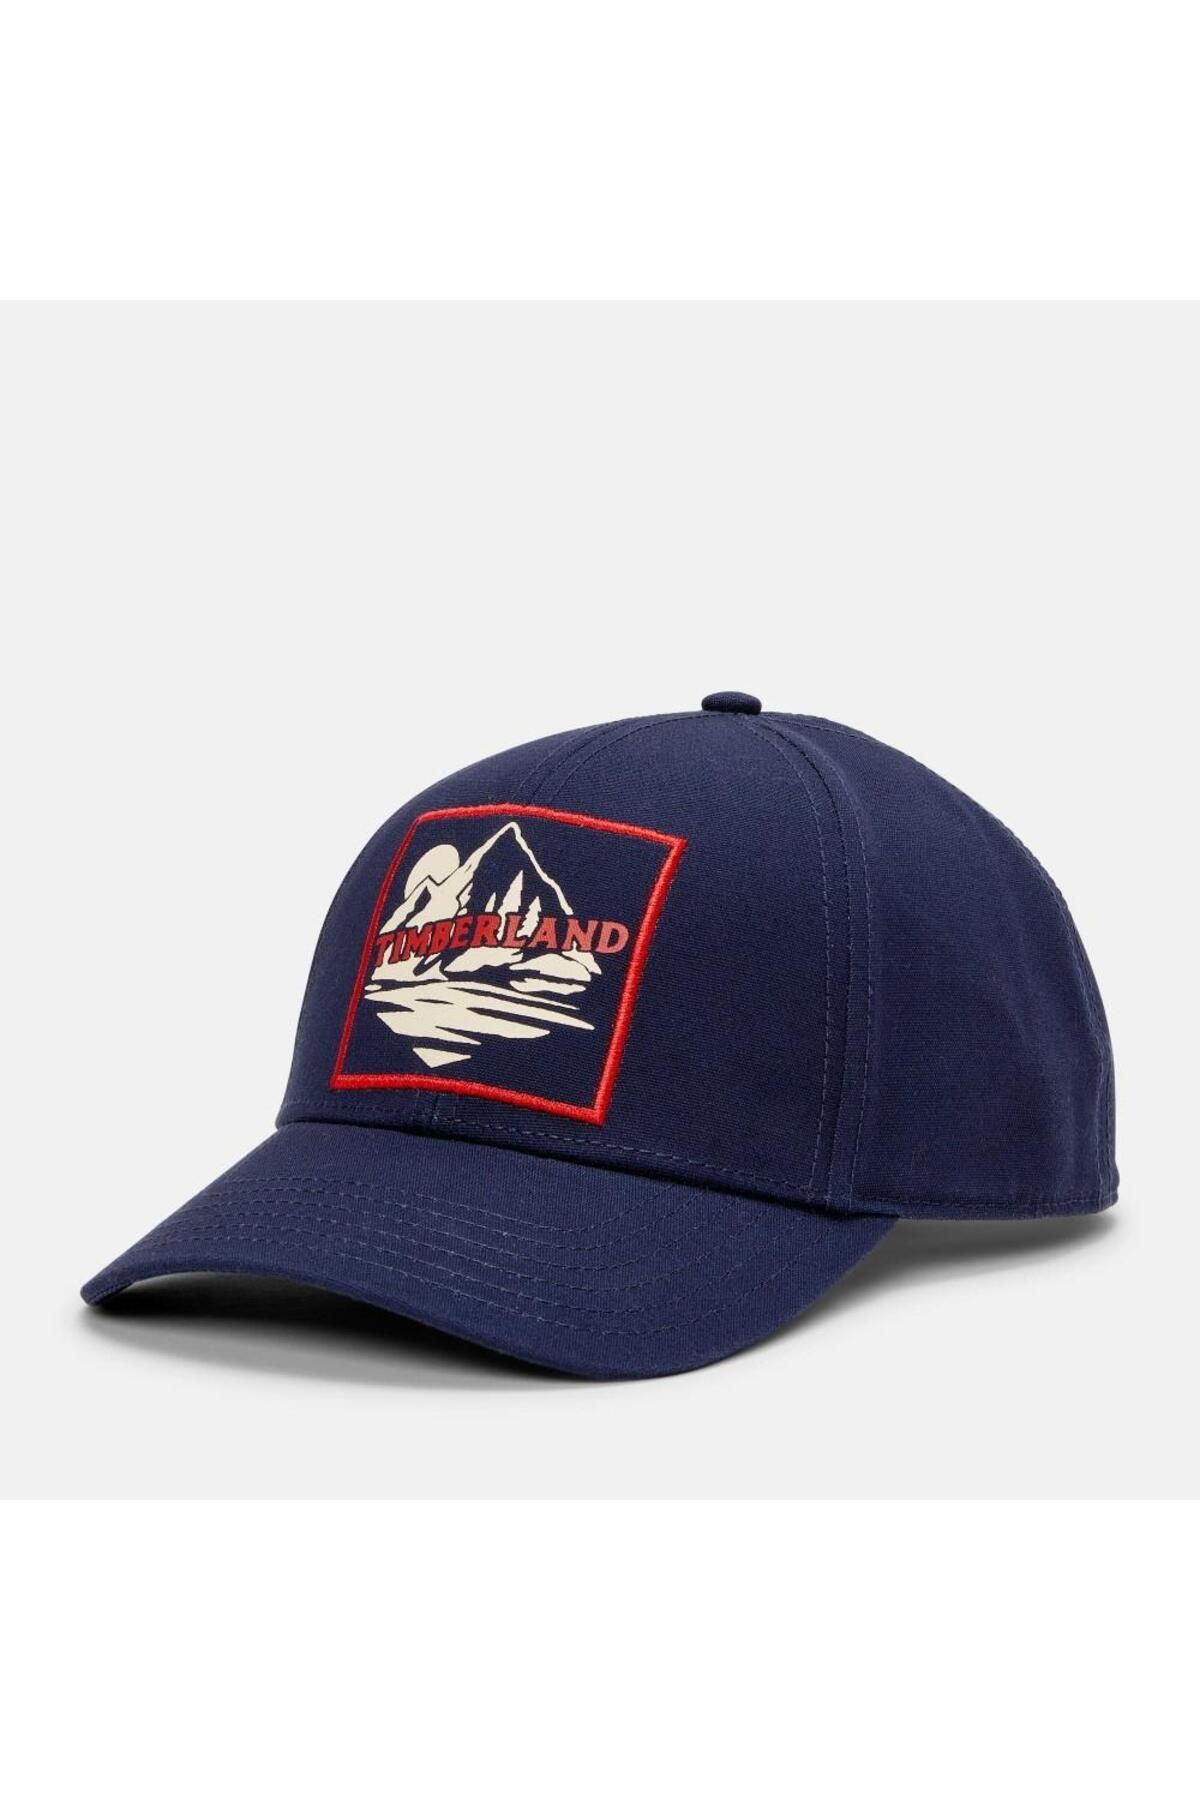 Timberland Unisex Mountain Logolu Beyzbol Şapkası - Lacivert